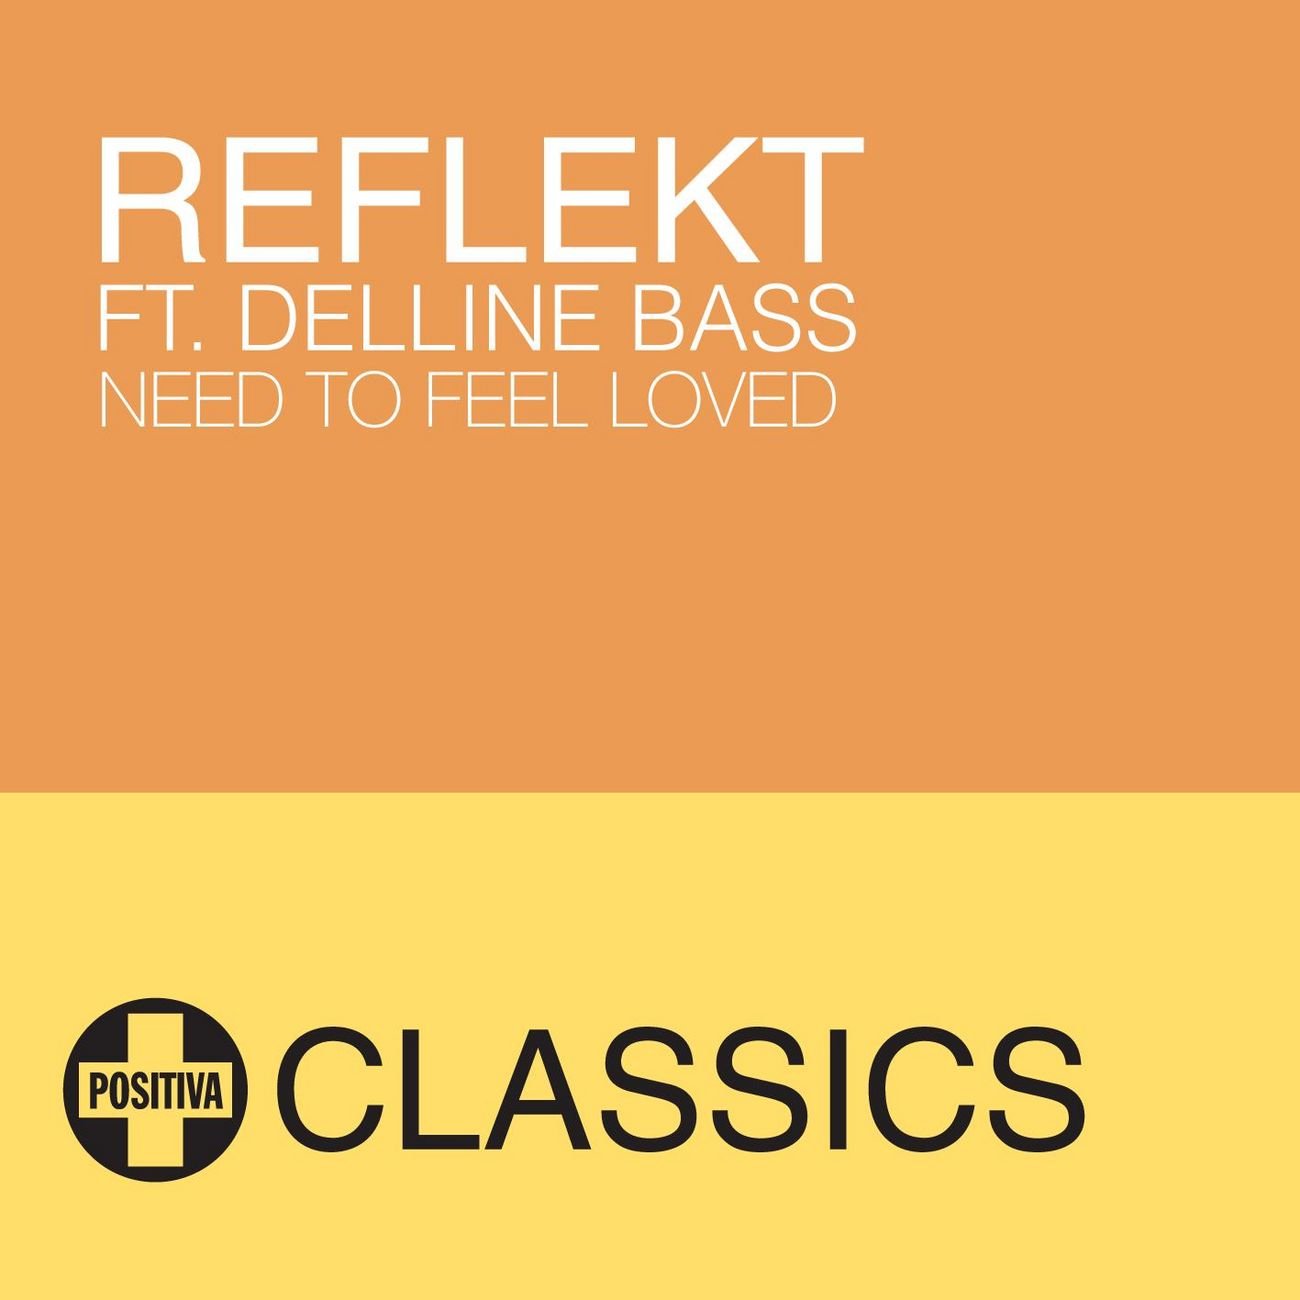 Reflekt delline need to feel loved. Reflekt ft. Delline Bass need to feel Loved. Reflekt need to feel Loved. Adam k Soha need to feel. Reflekt feat. Delline Bass.